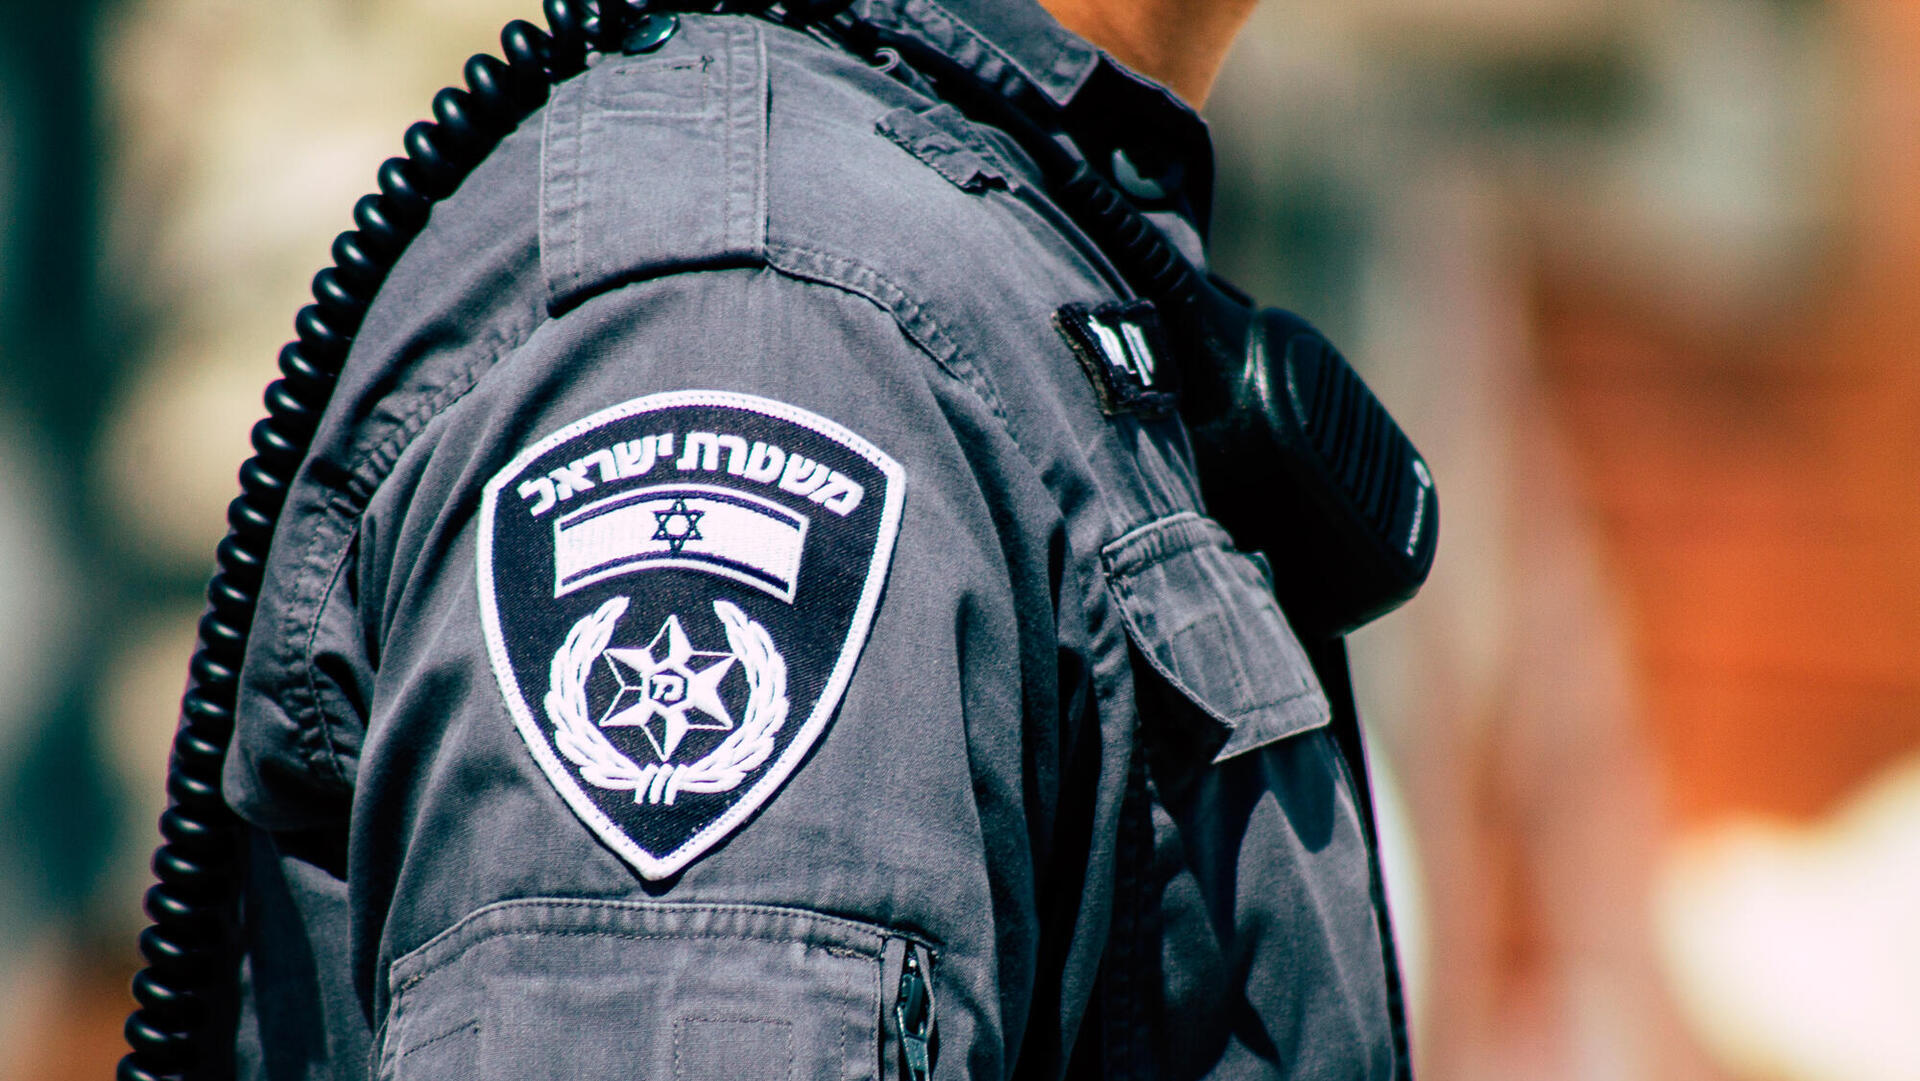 מכשיר קשר מוטורלה משטרת ישראל מג"ב משמר הגבול 